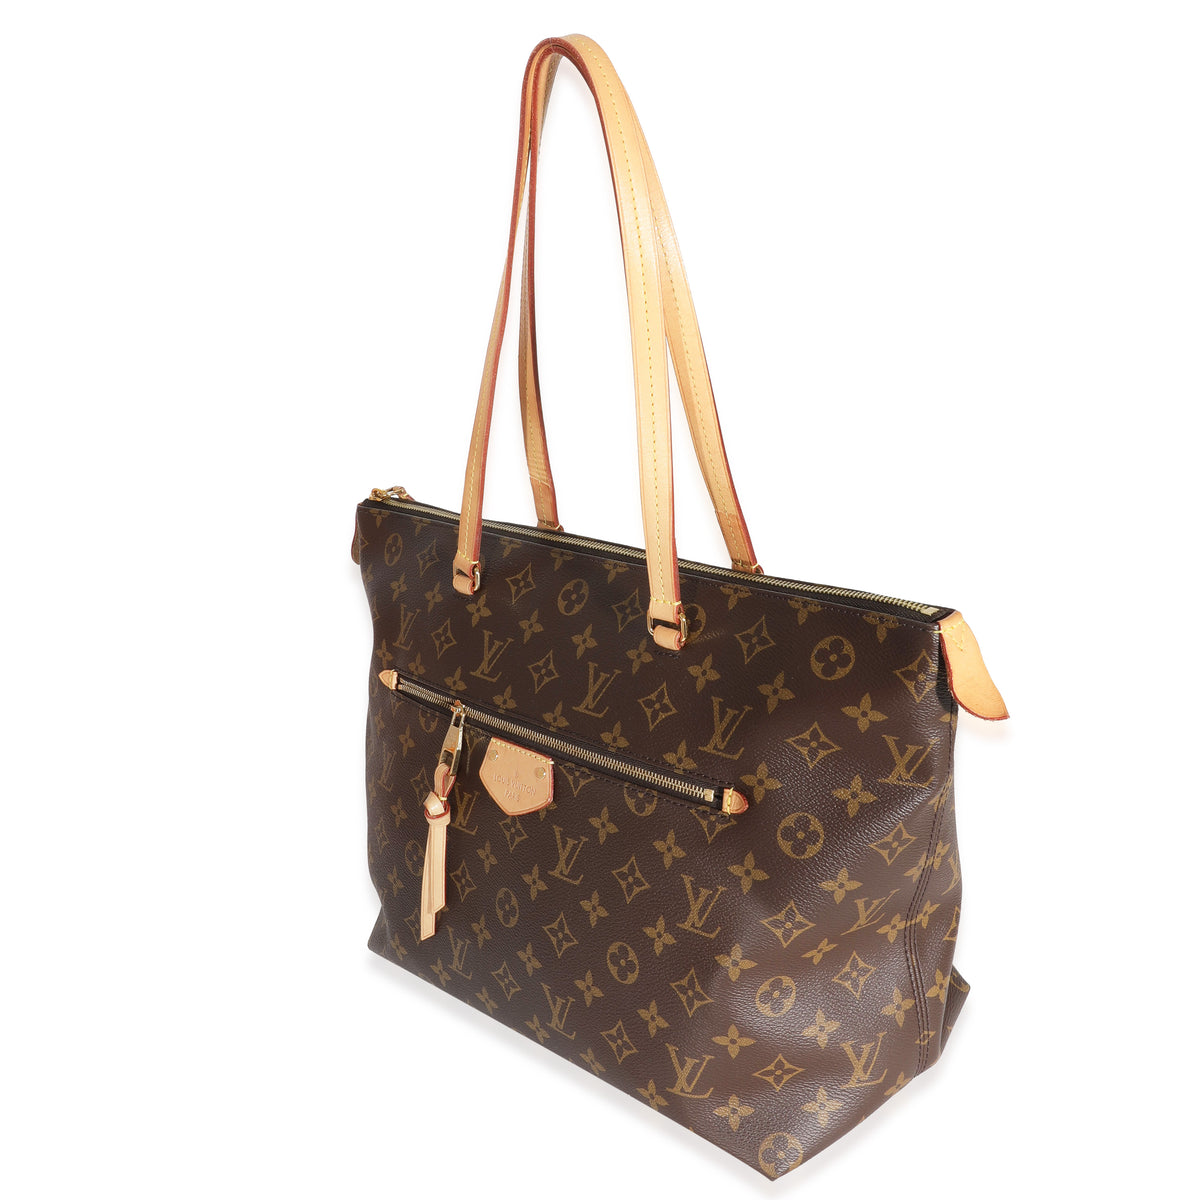 Louis Vuitton Iena Mm Monogram Handbag